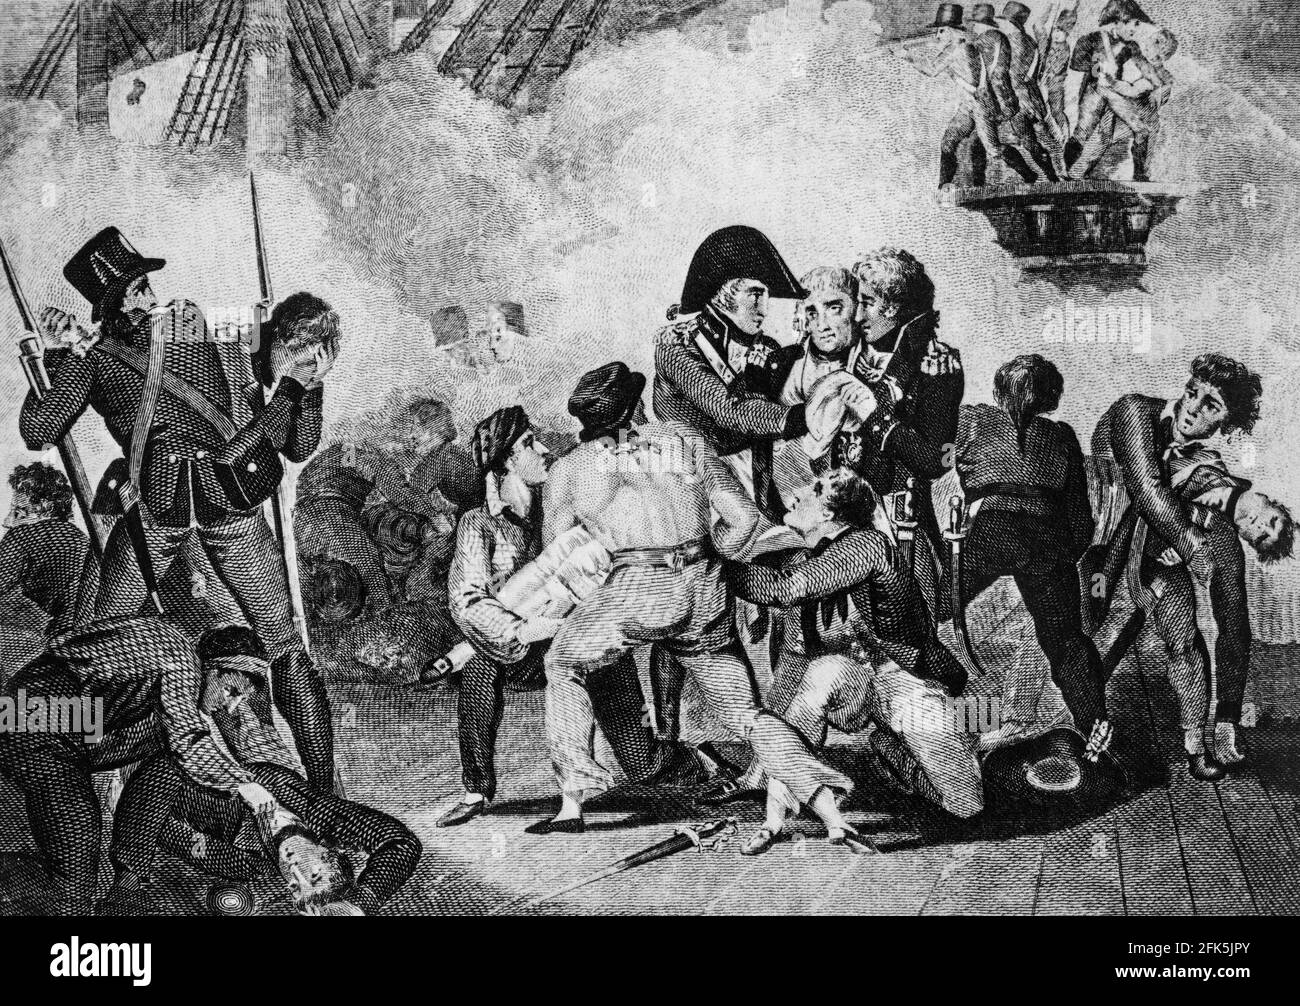 Die Verwundung von Lord Horatio Nelson am 21. Oktober 1805, als ein Musketball in seine Brust drang; der Oberfeldwebel von Marines mit zwei Seeleuten hob ihn vom Deck. Sein Tod, wenige Minuten später, ereignete sich auf dem Flaggschiff HMS Victory während der Schlacht von Trafalgar vor der Küste der spanischen Halbinsel Cape Trafalgar, als die britische Flotte unter der Führung von Lord Horatio Nelson Als Napoleon Bonaparte seine mächtige Armee über den Ärmelkanal schicken sollte, um die Insel zu erobern, übernahm er eine kombinierte französische und spanische Armee. Stockfoto